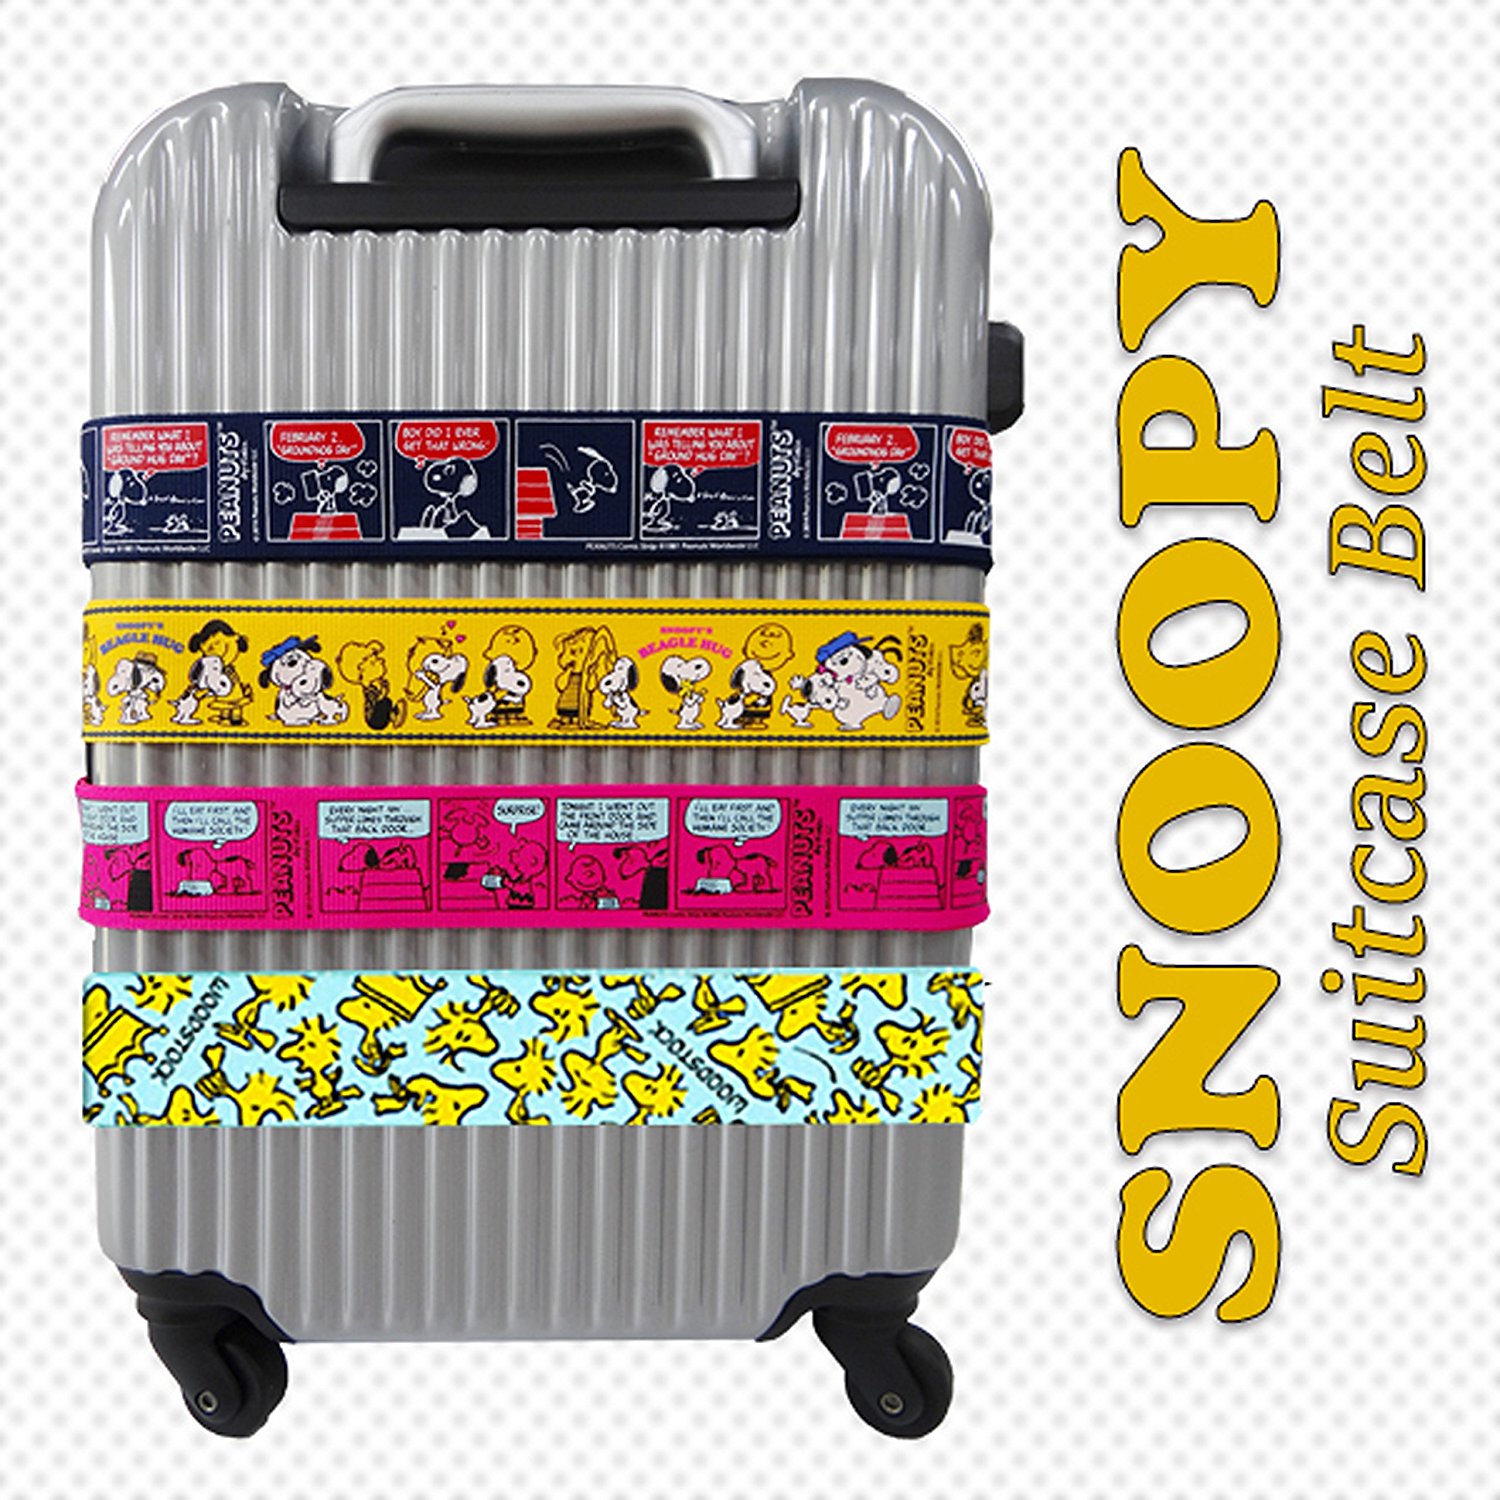 スヌーピーのスーツケースベルト Tsaロック付き 日本製で安心 大人だってスヌーピーファン 100 欲しいグッズだけブログ